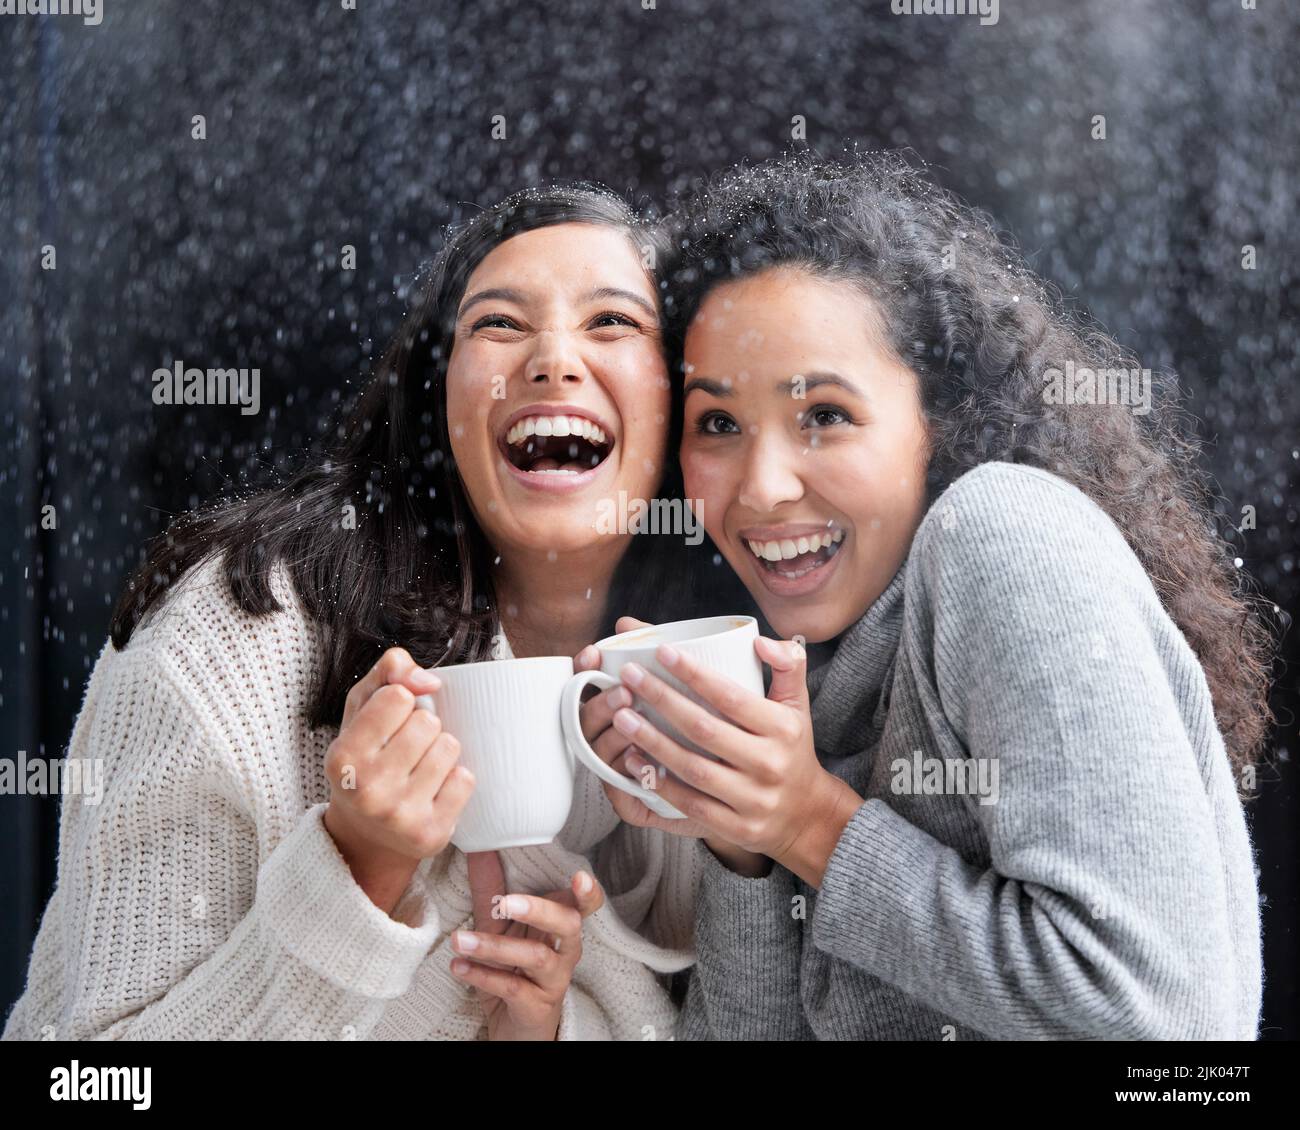 Meine Vorstellung von Weihnachten, ob altmodisch oder modern, ist sehr einfach, andere zu lieben. Zwei junge Frauen trinken Kaffee im Schnee draußen. Stockfoto